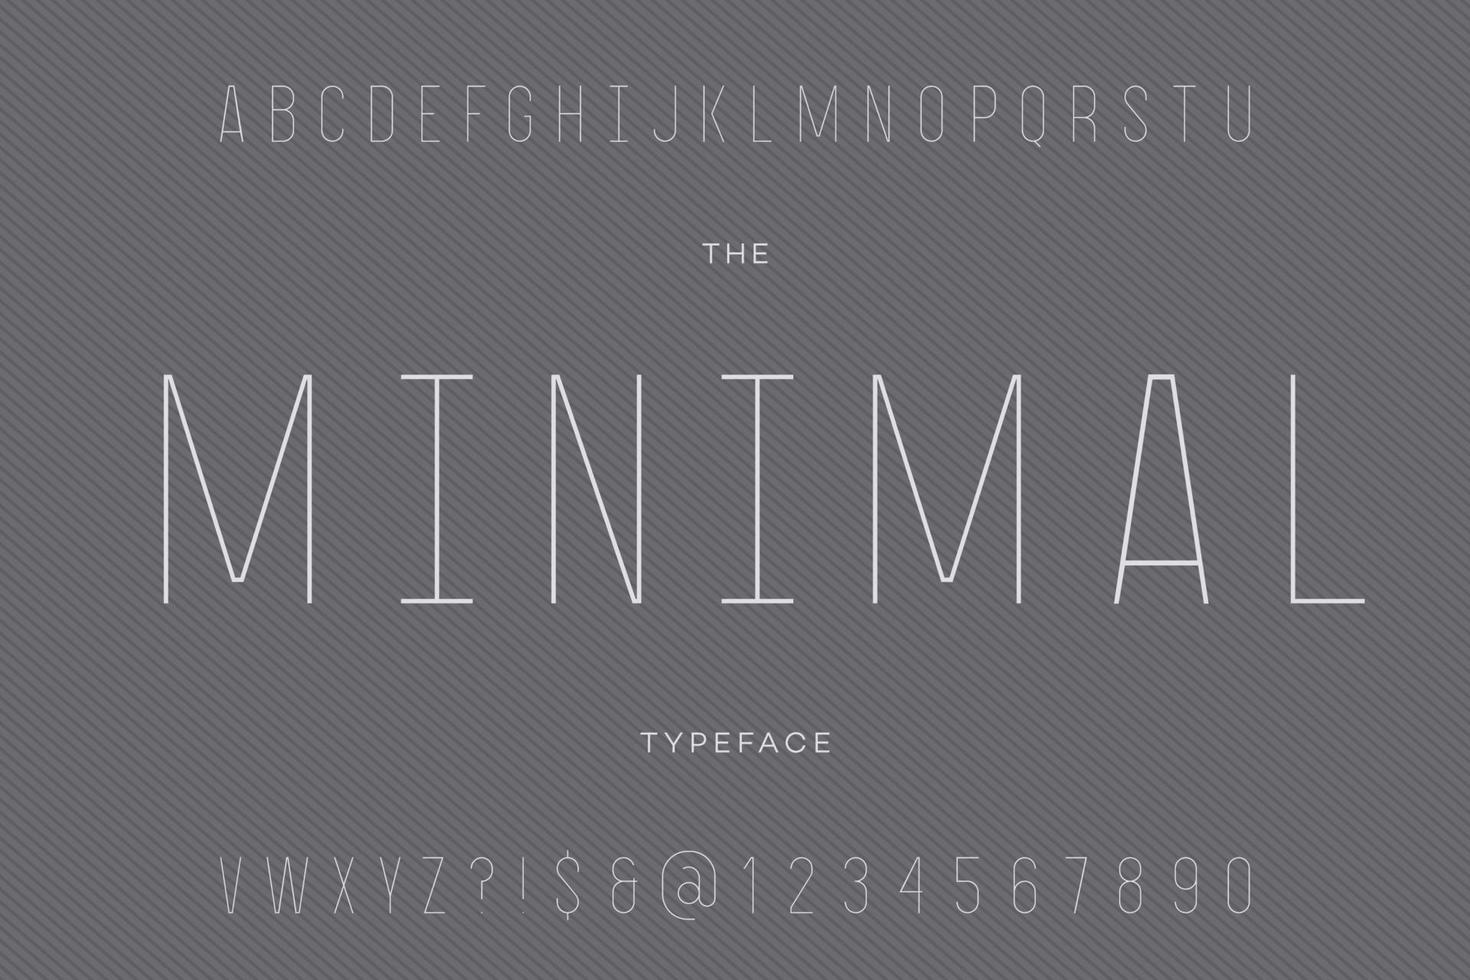 Minimal typeface trendy typography vector